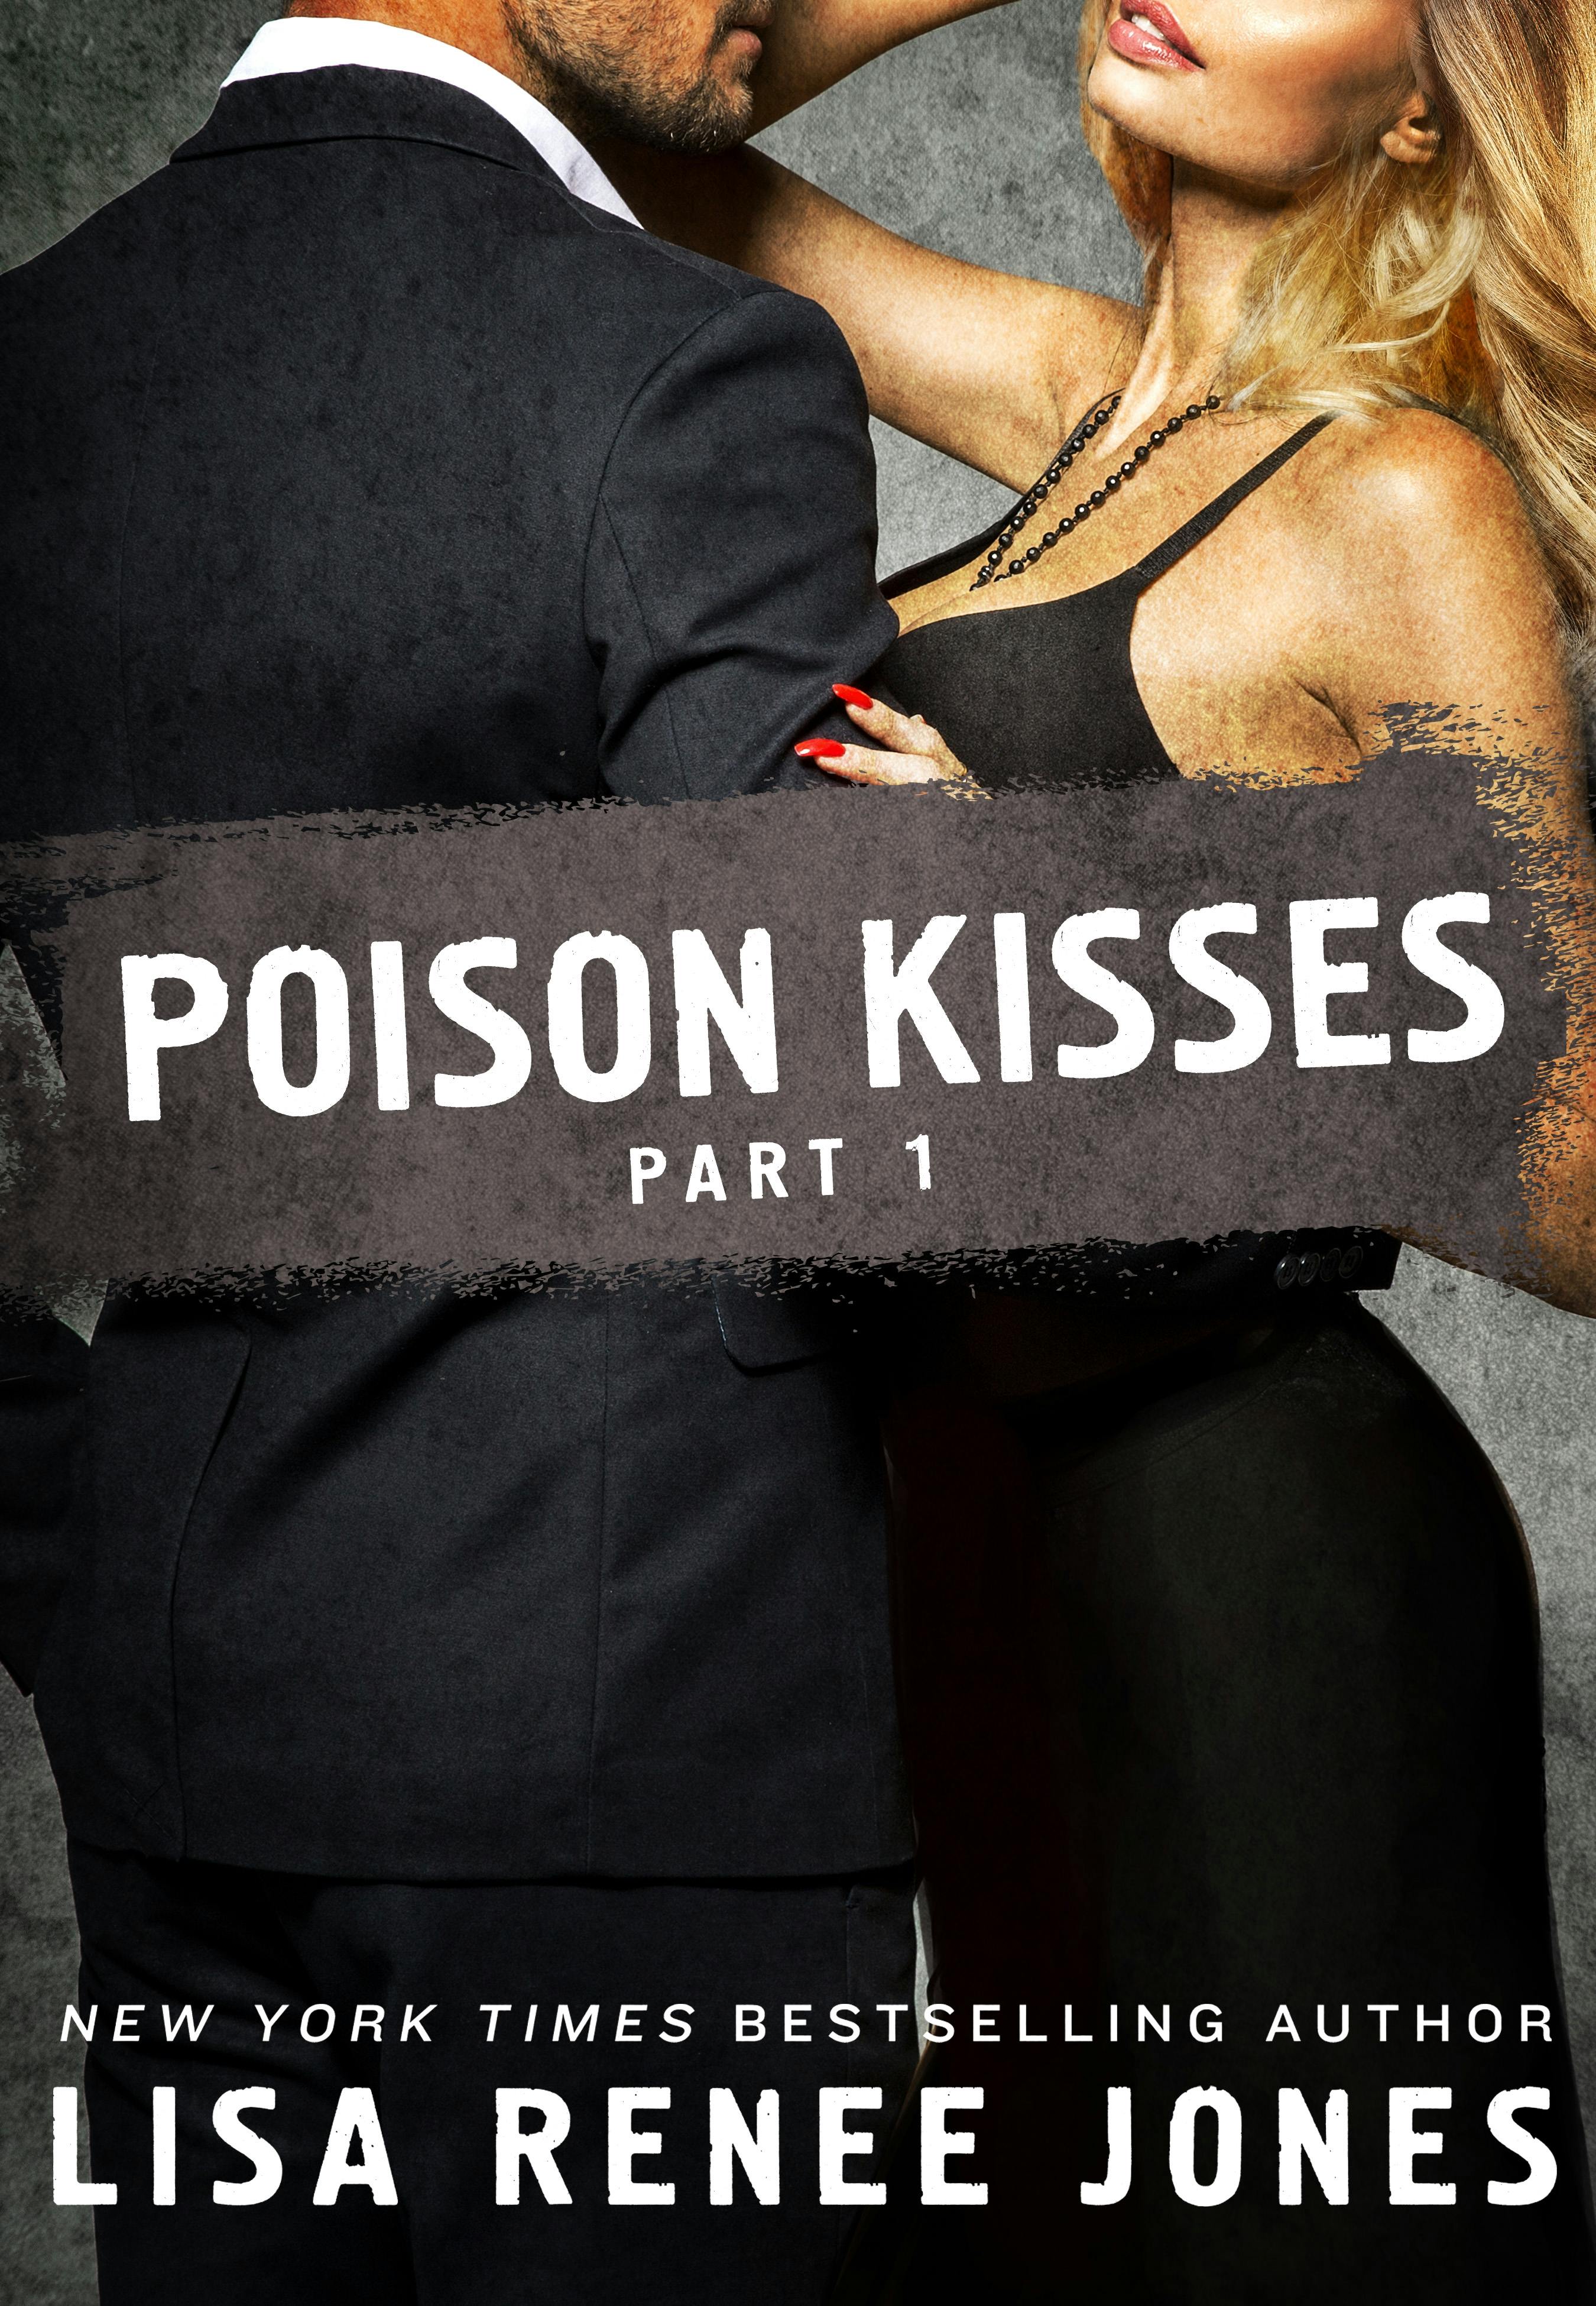 Image of Poison Kisses Part 1